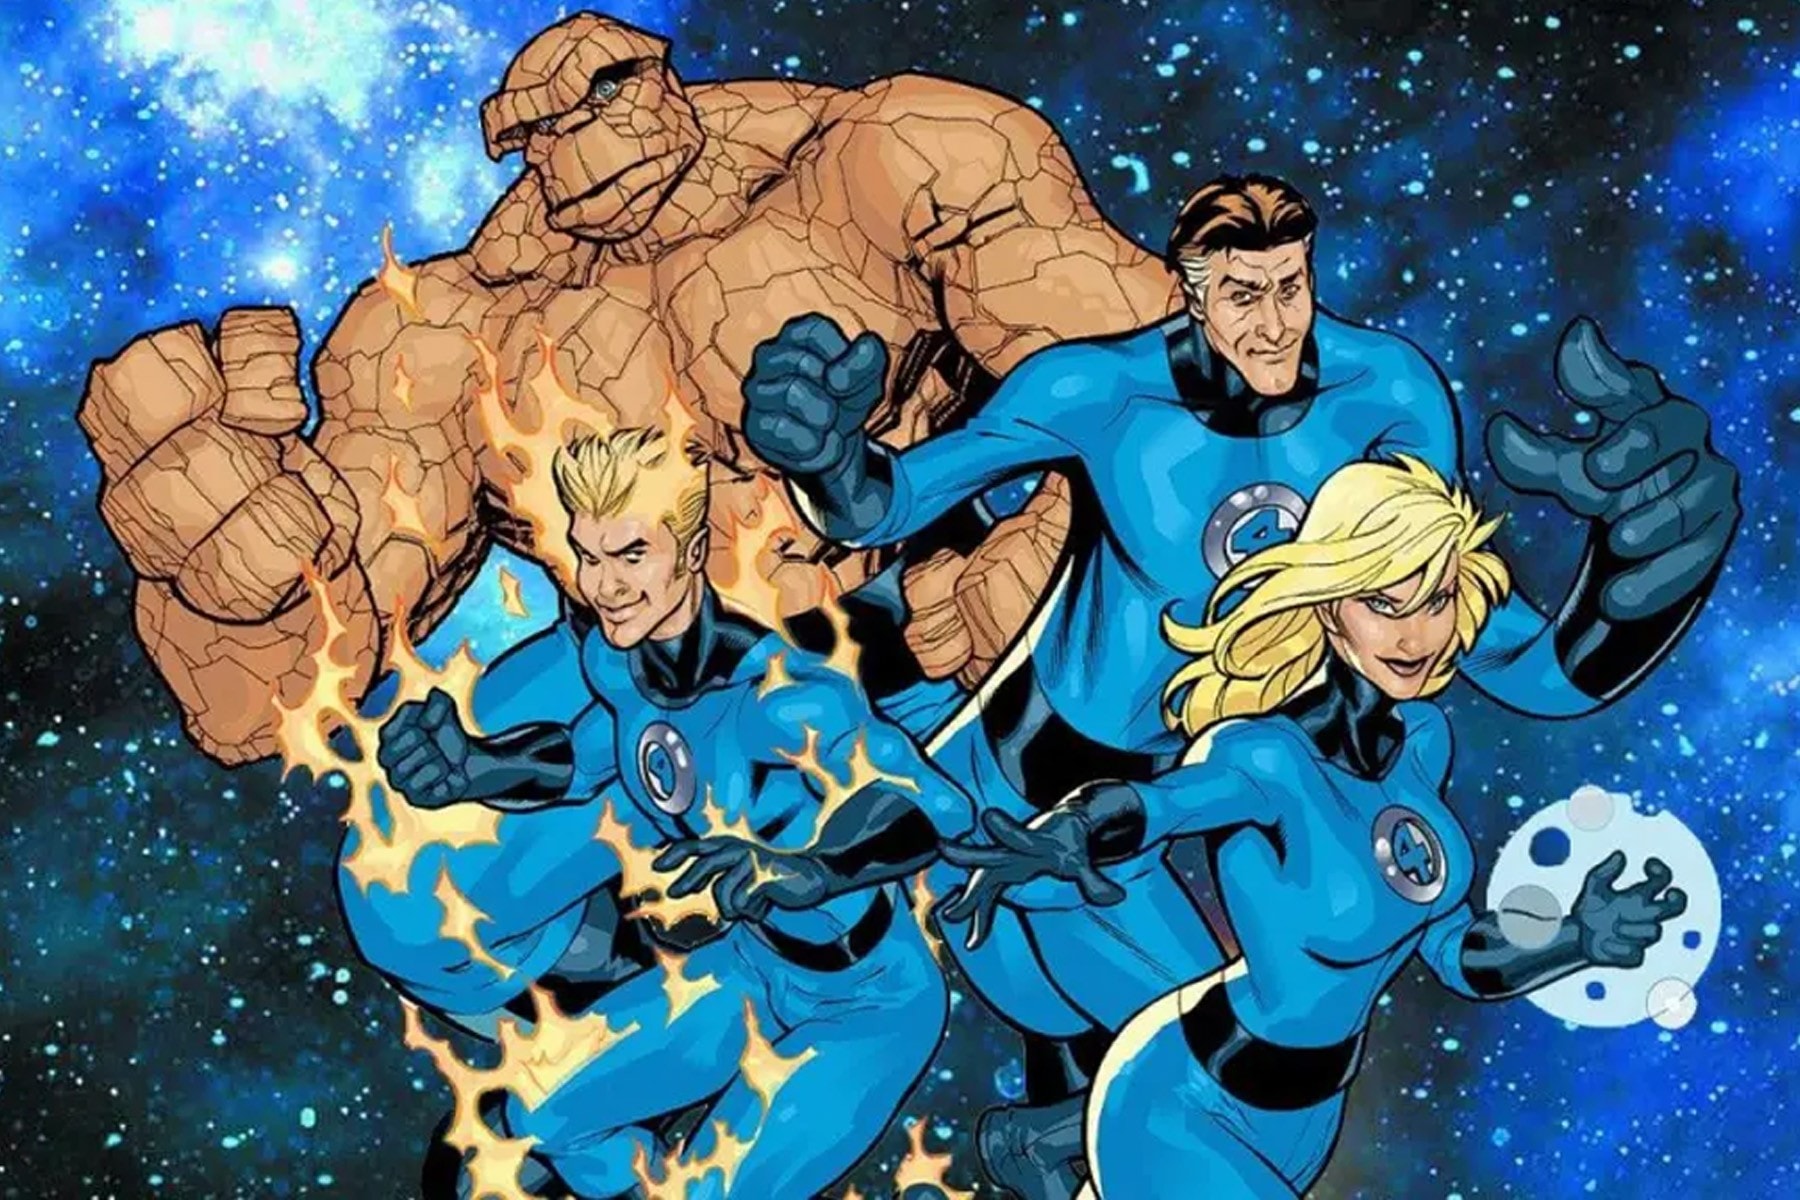 Kevin Feige marvel MCU Fantastic Four film plot details Multiverse Saga 